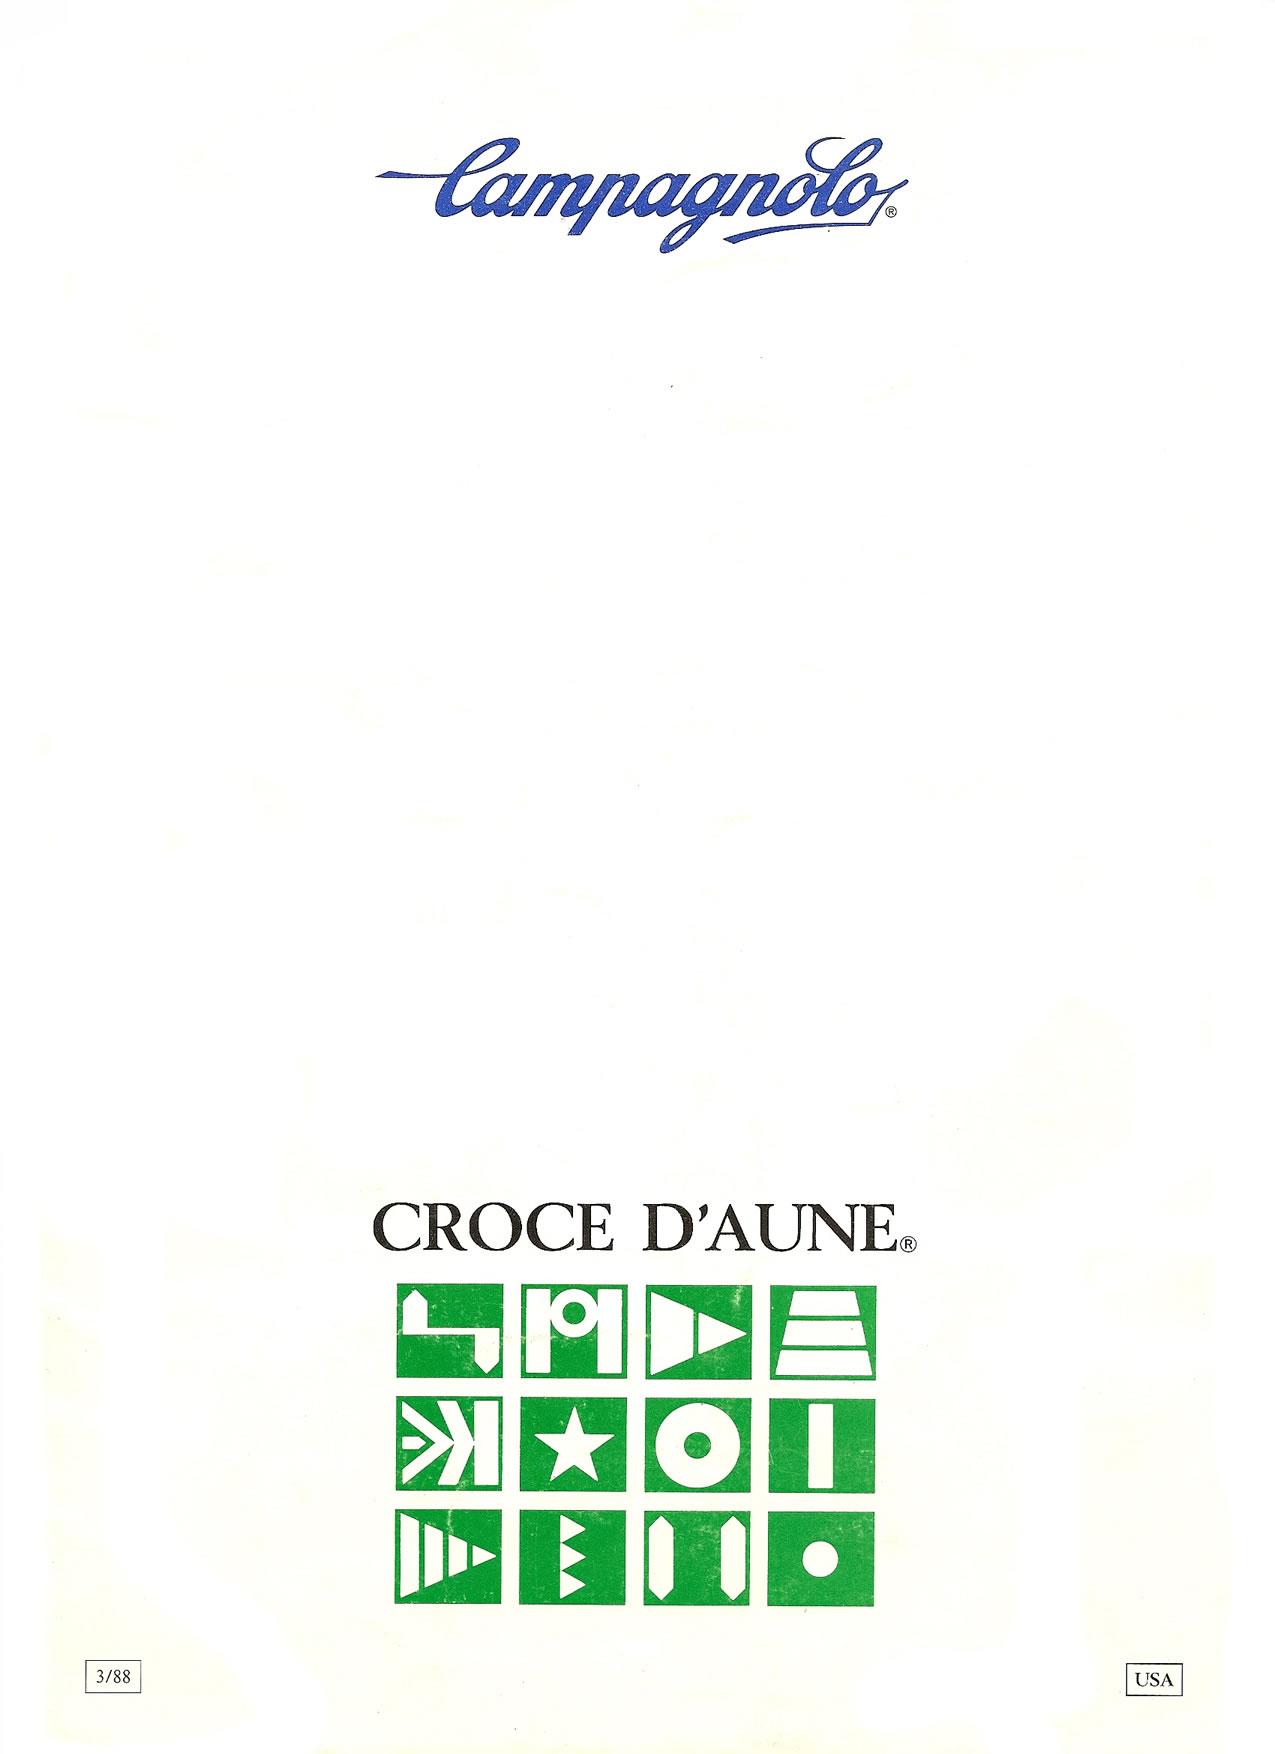 1988 Campagnolo Croce d'Aune Catalog